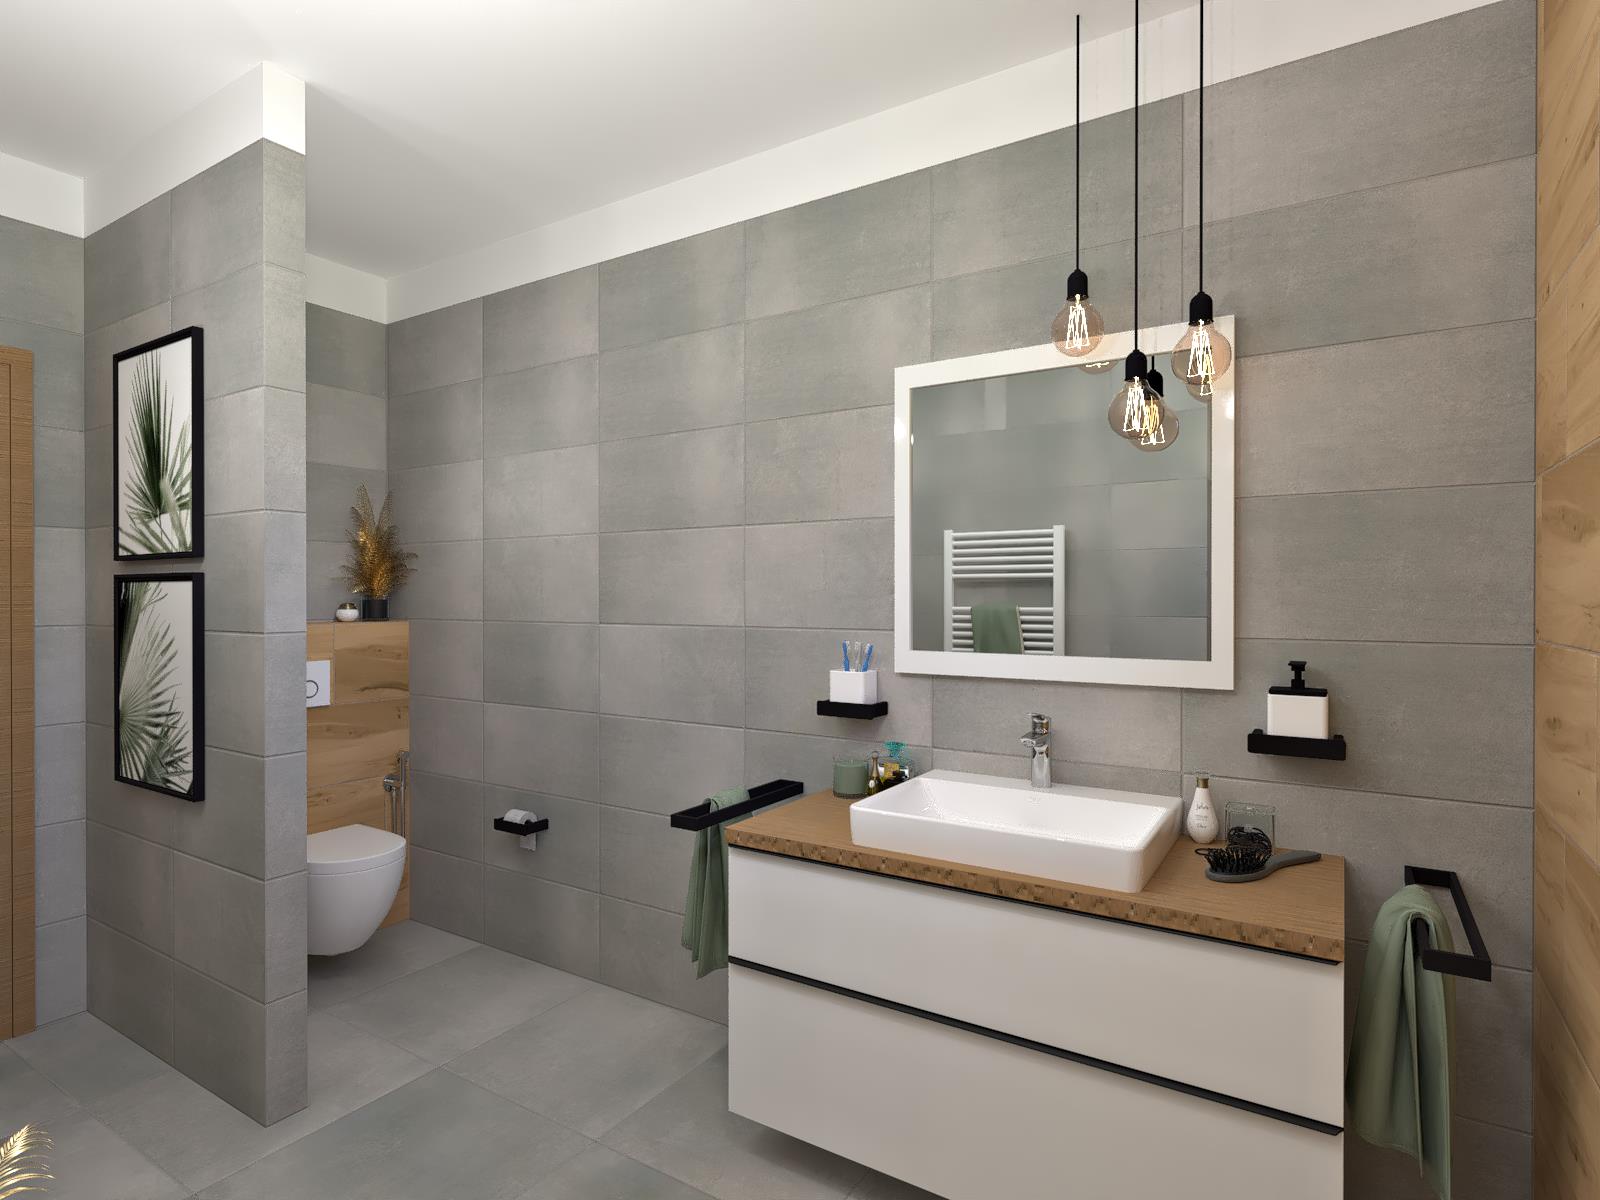 Vizualizace budoucí koupelny a wc - Pohled od sprchy - menší formát obkladů